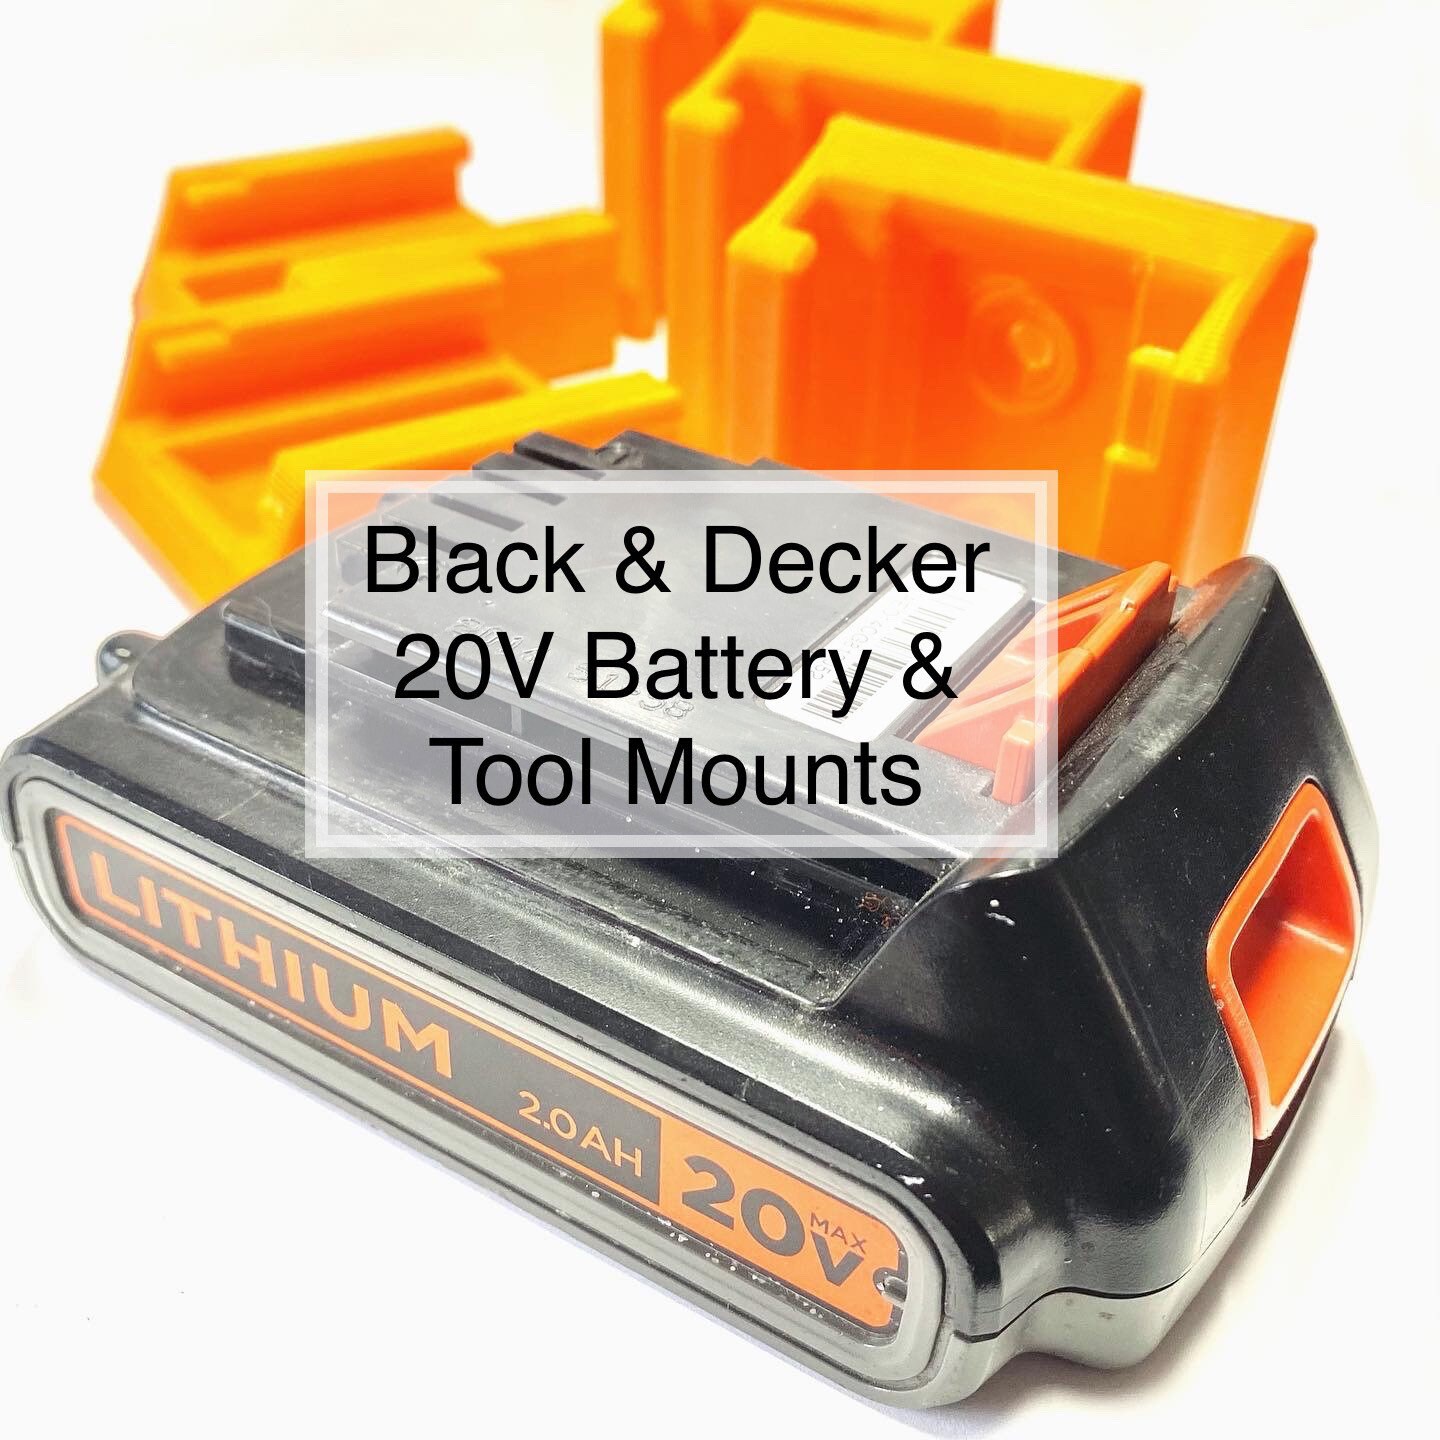 Black & Decker 20V Battery Mount